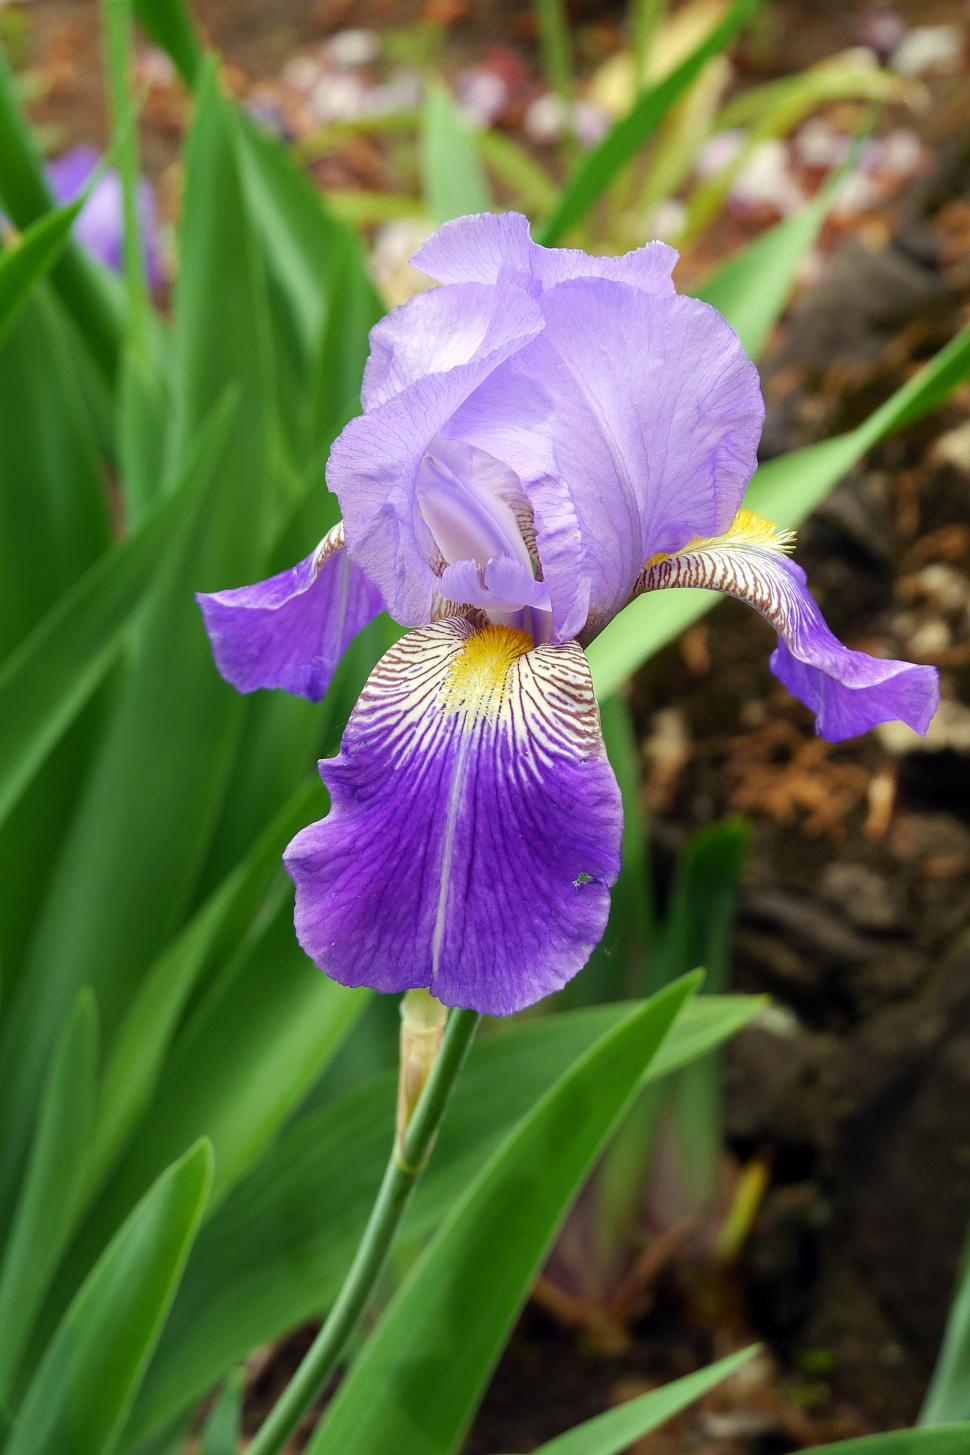 Free Image of Single Purple Iris Flower 